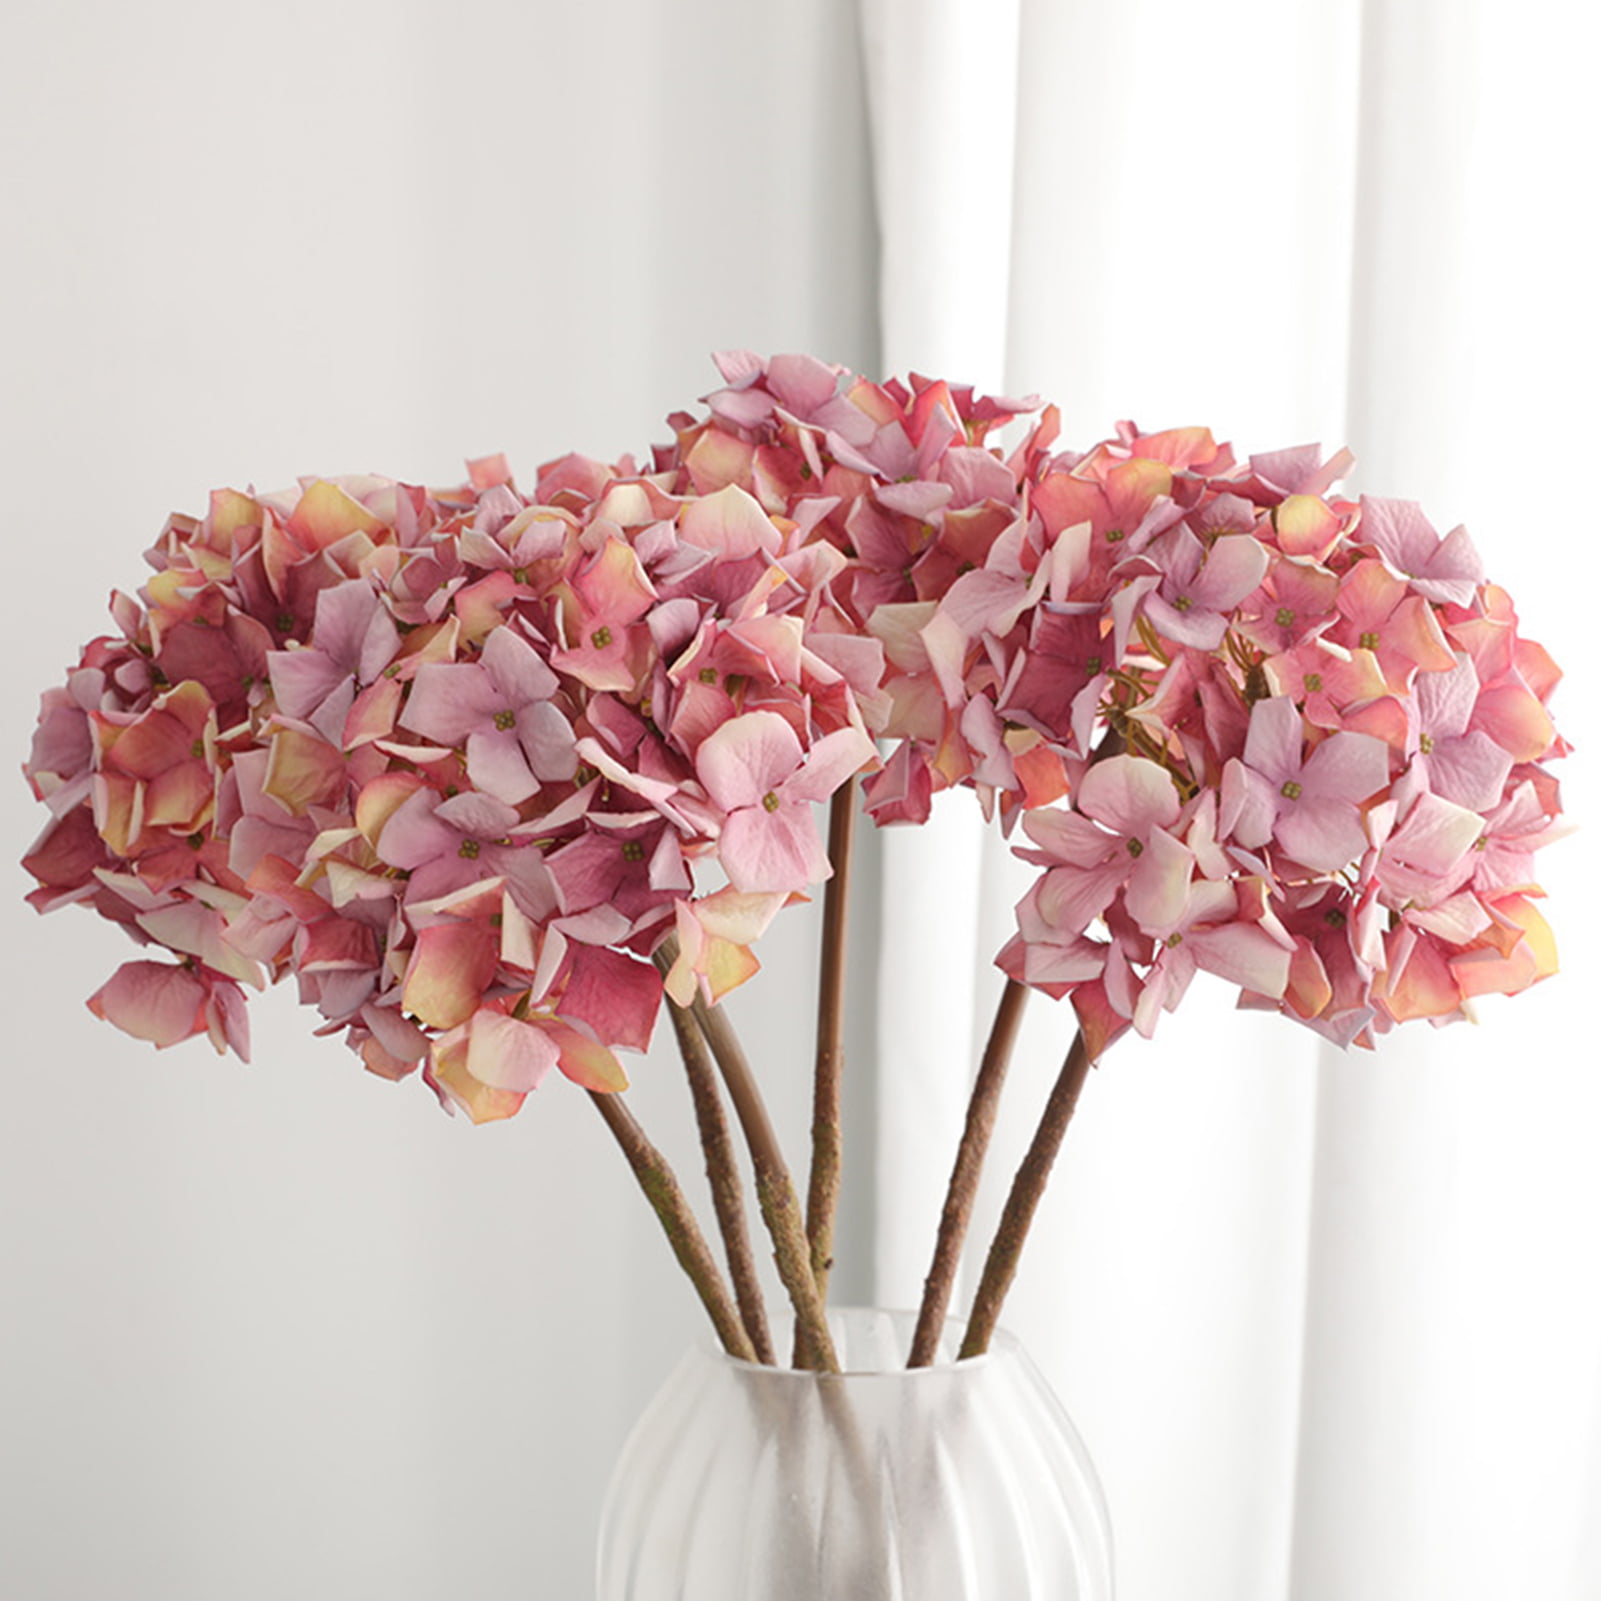 Details about   Artificial Flowers Hydrangea Bride Bouquet Vase Wedding Home Decoration Leaves 